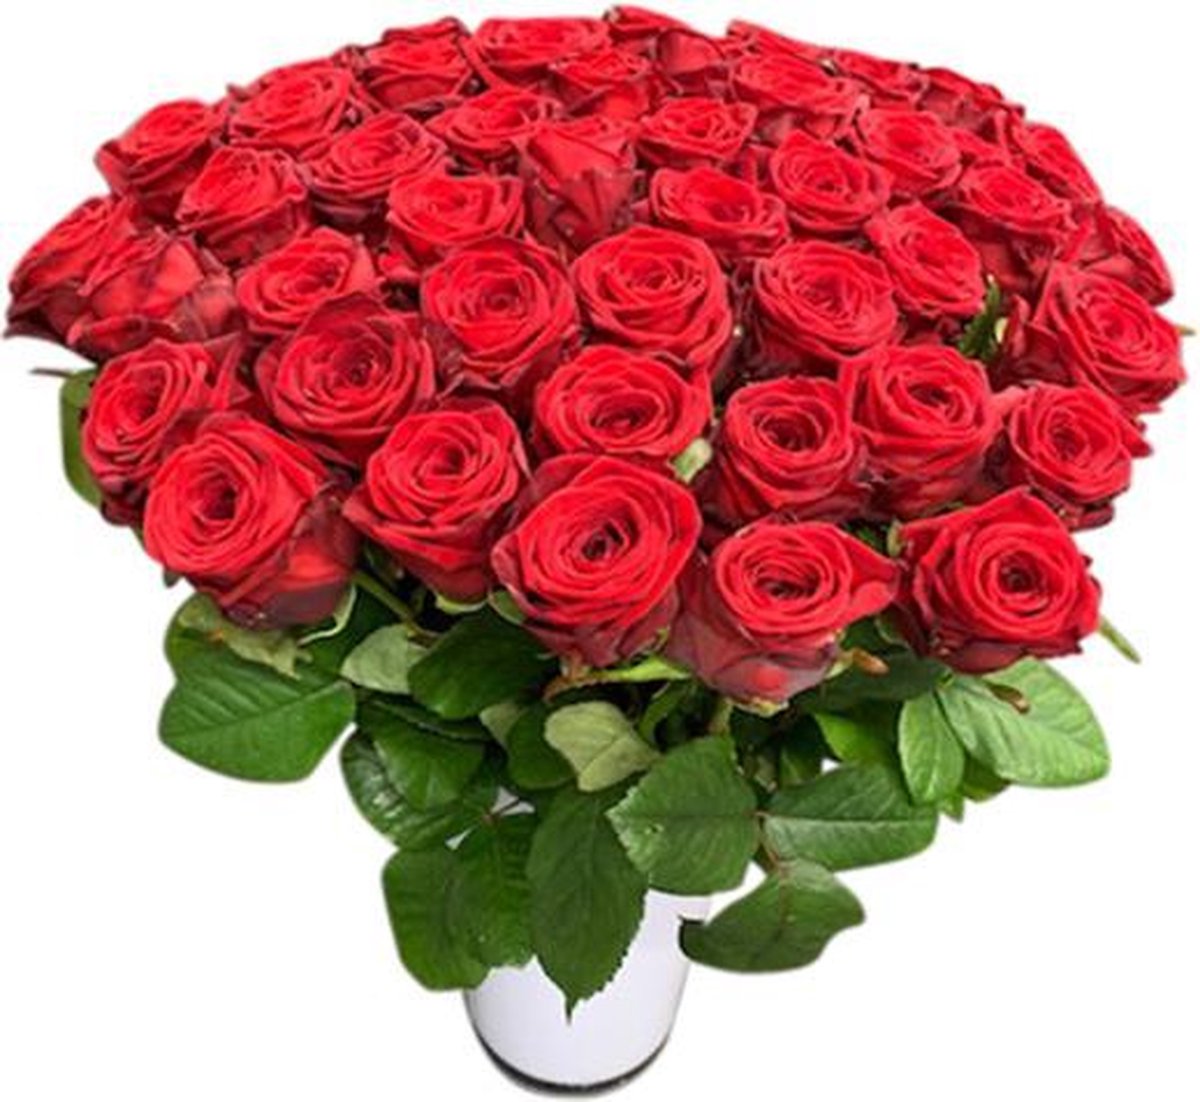 50 rode rozen boeket in vaas bol.com